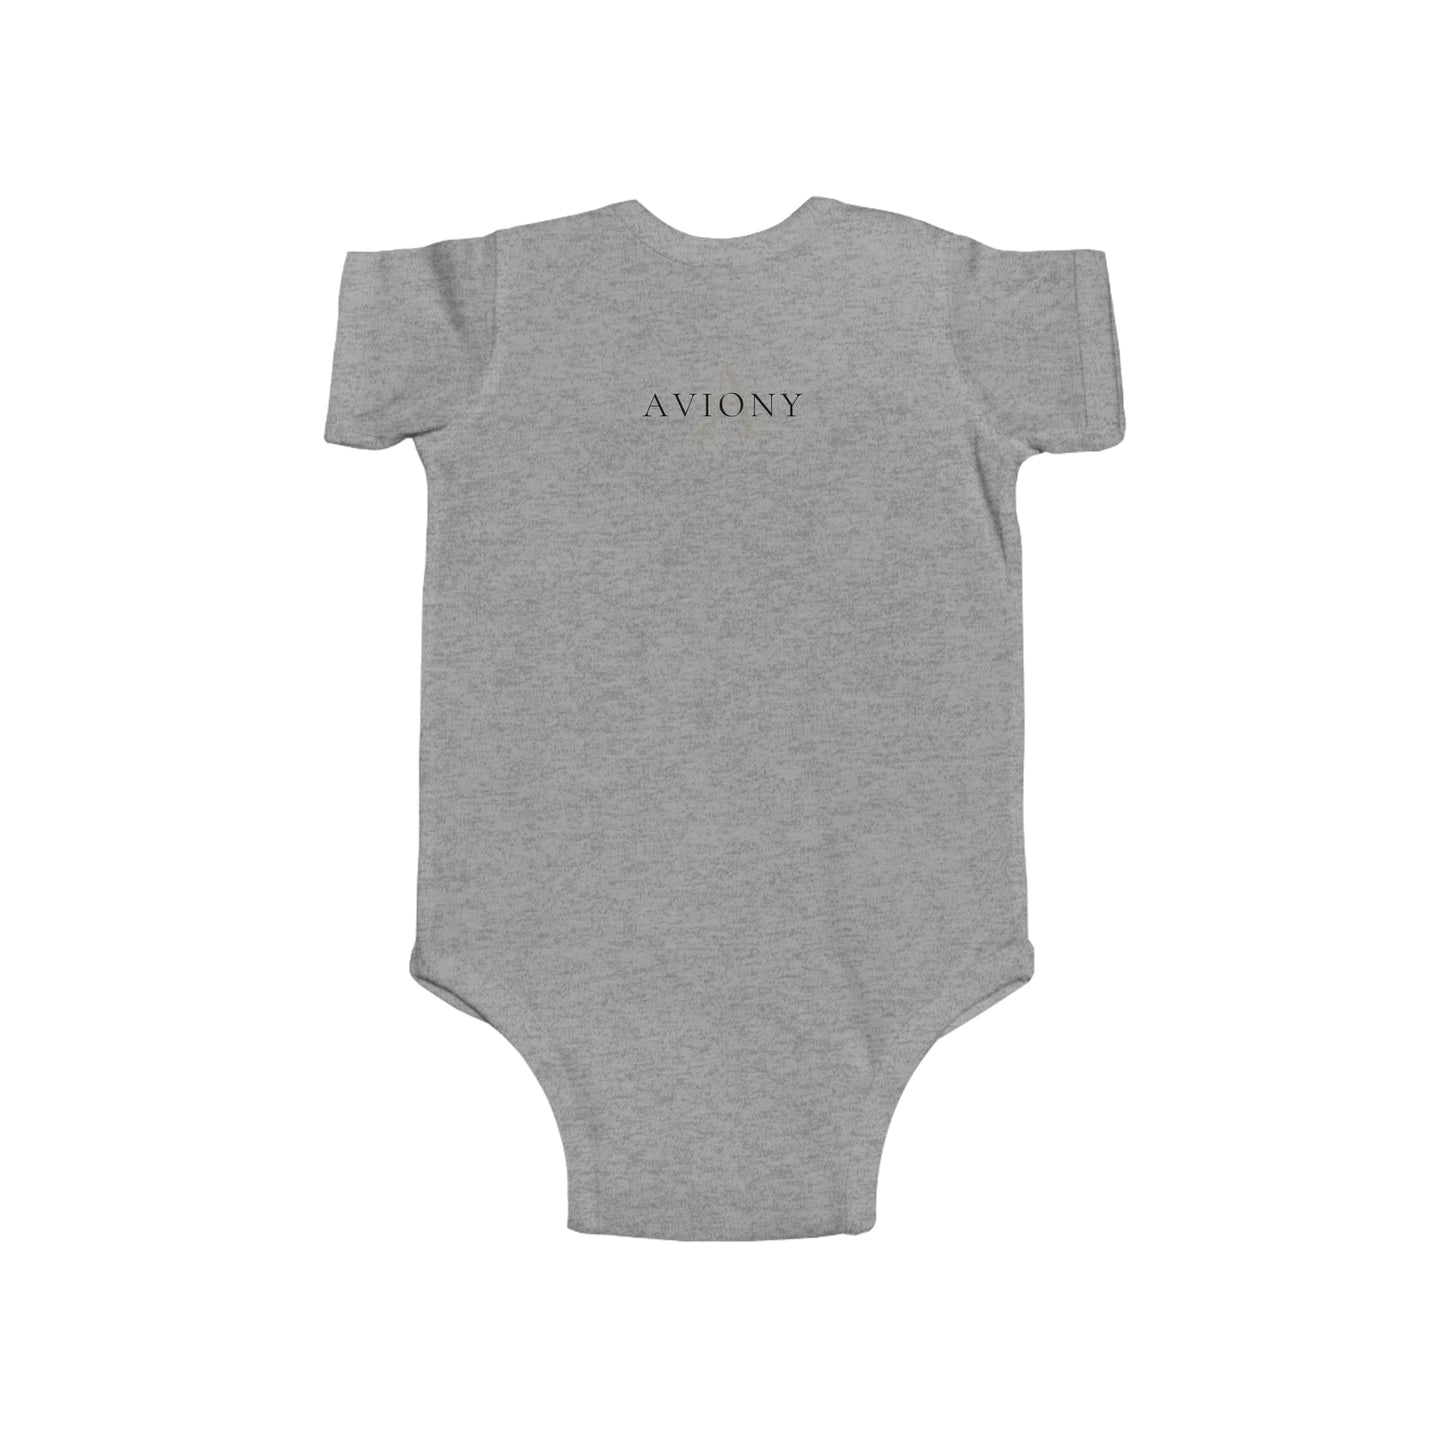 AVIONY Infant Fine Jersey Bodysuit